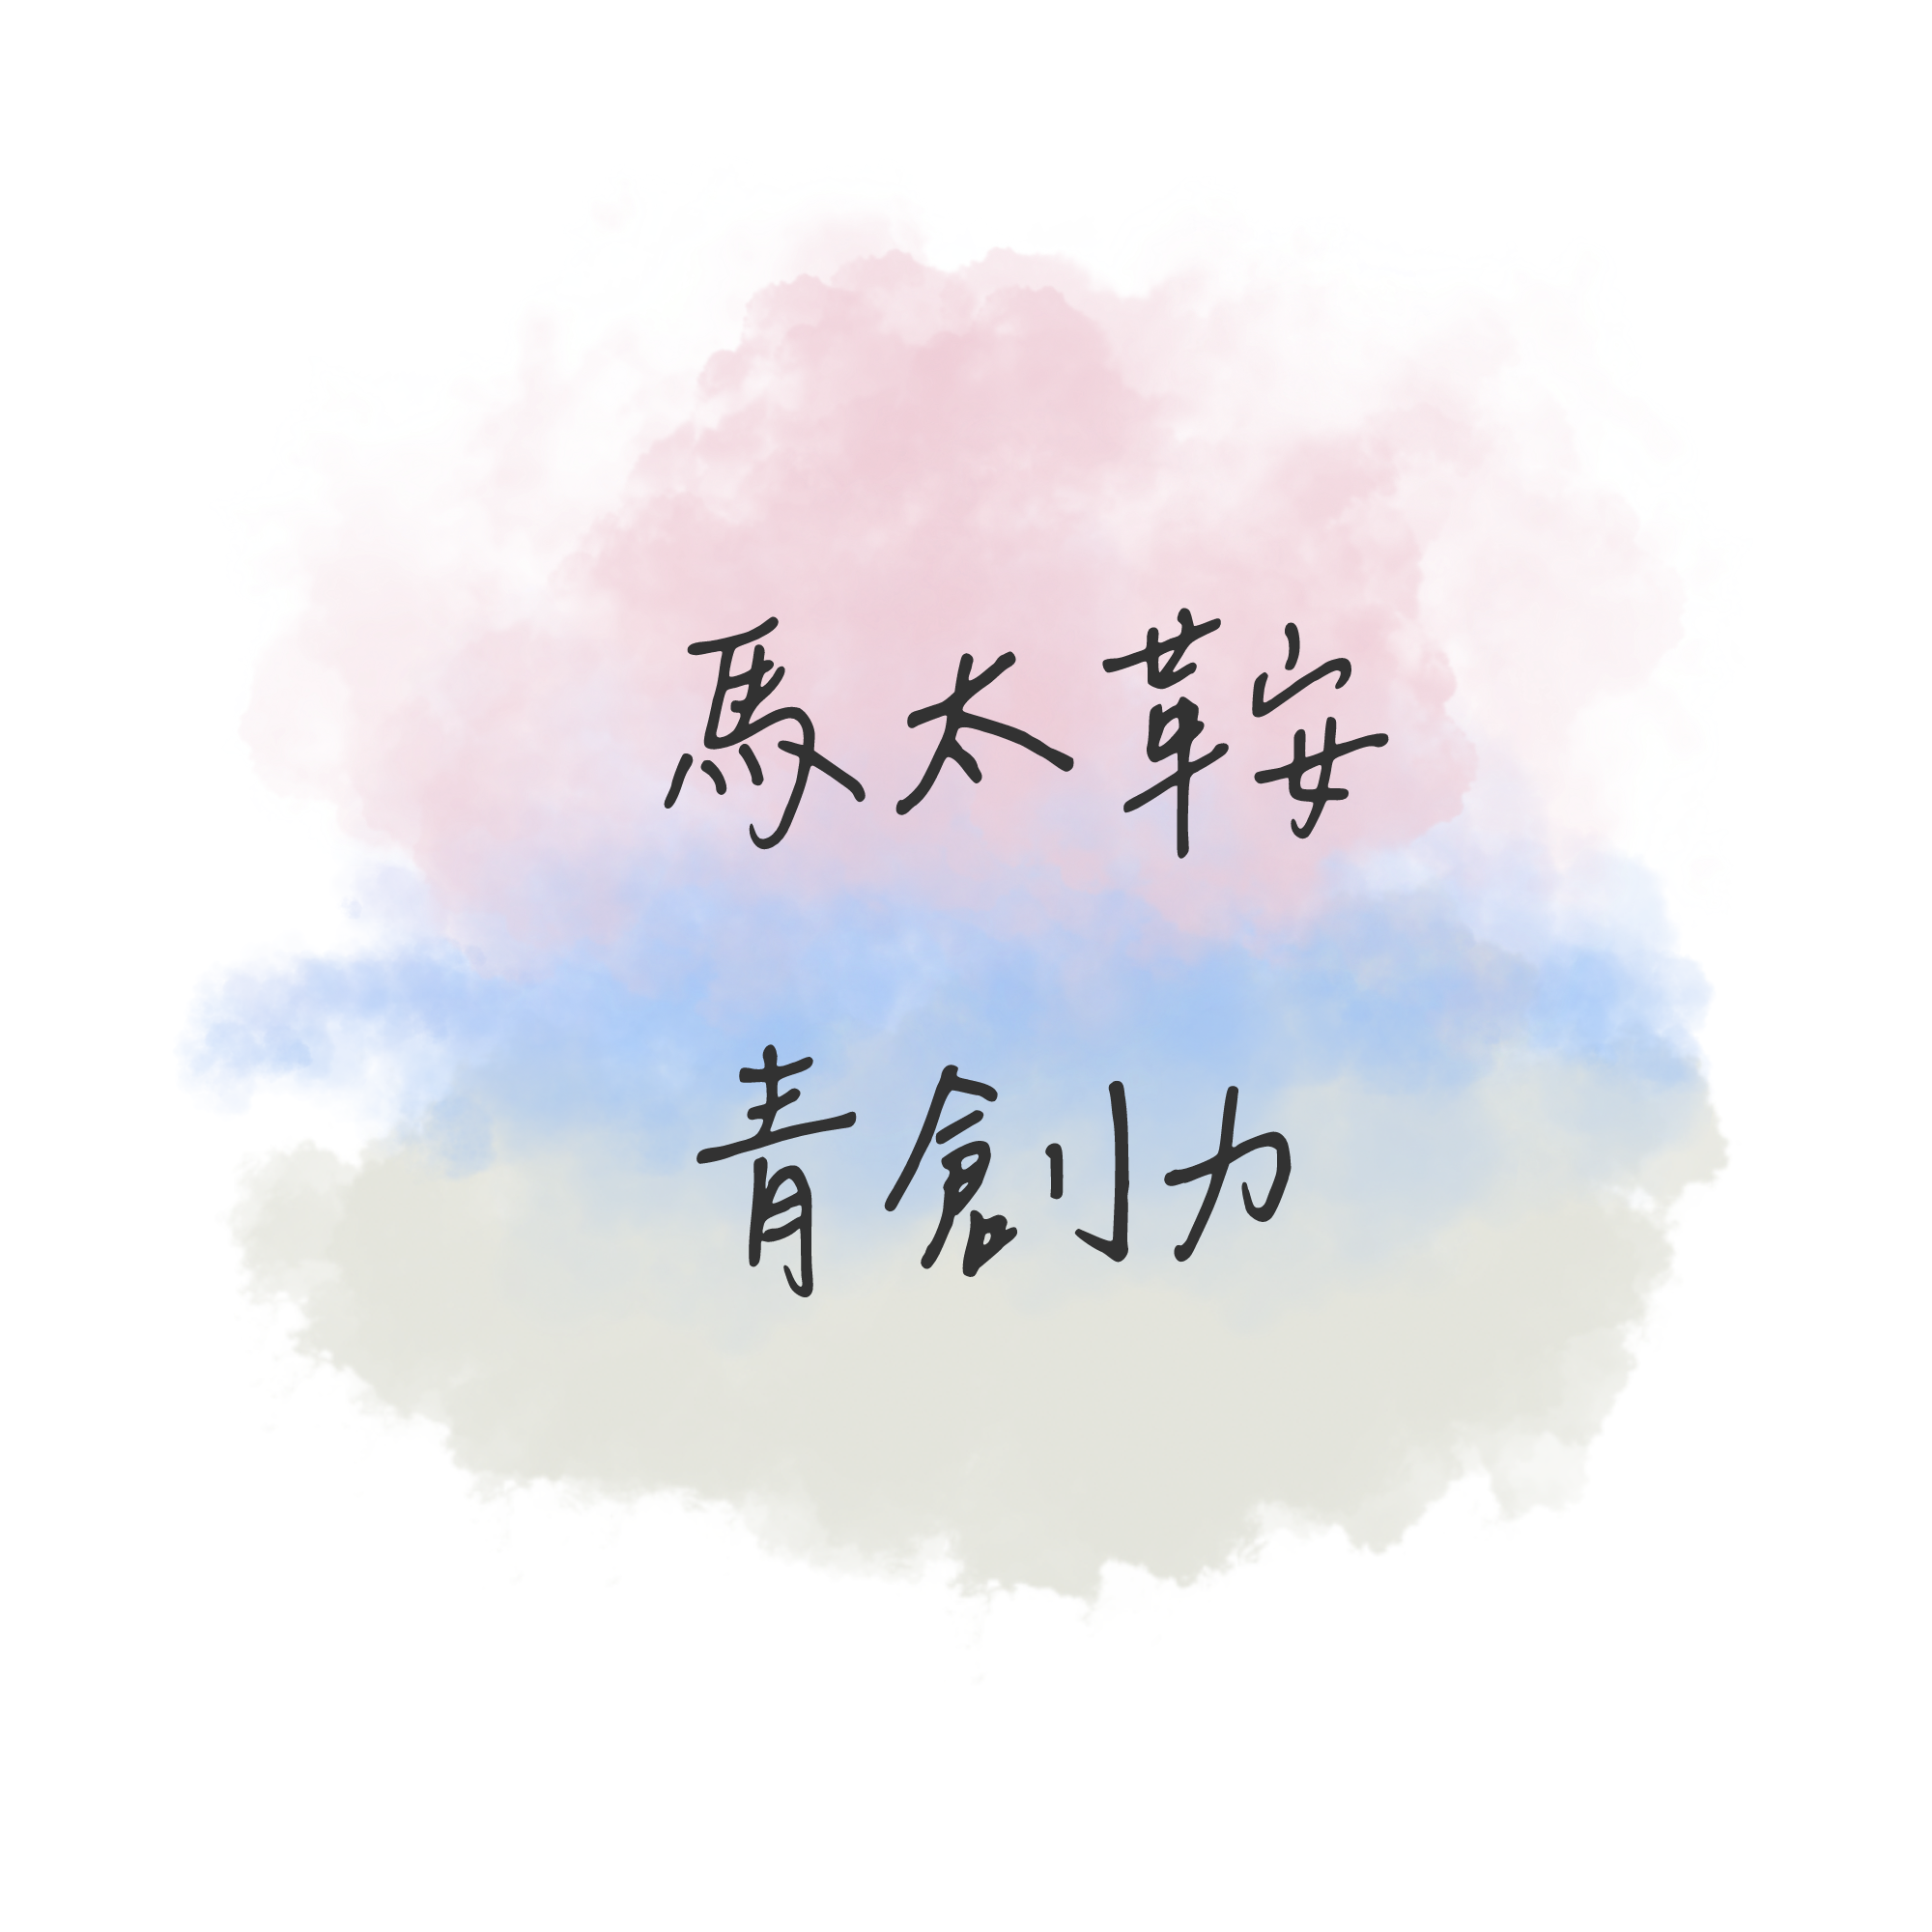 馬太鞍青創力 logo